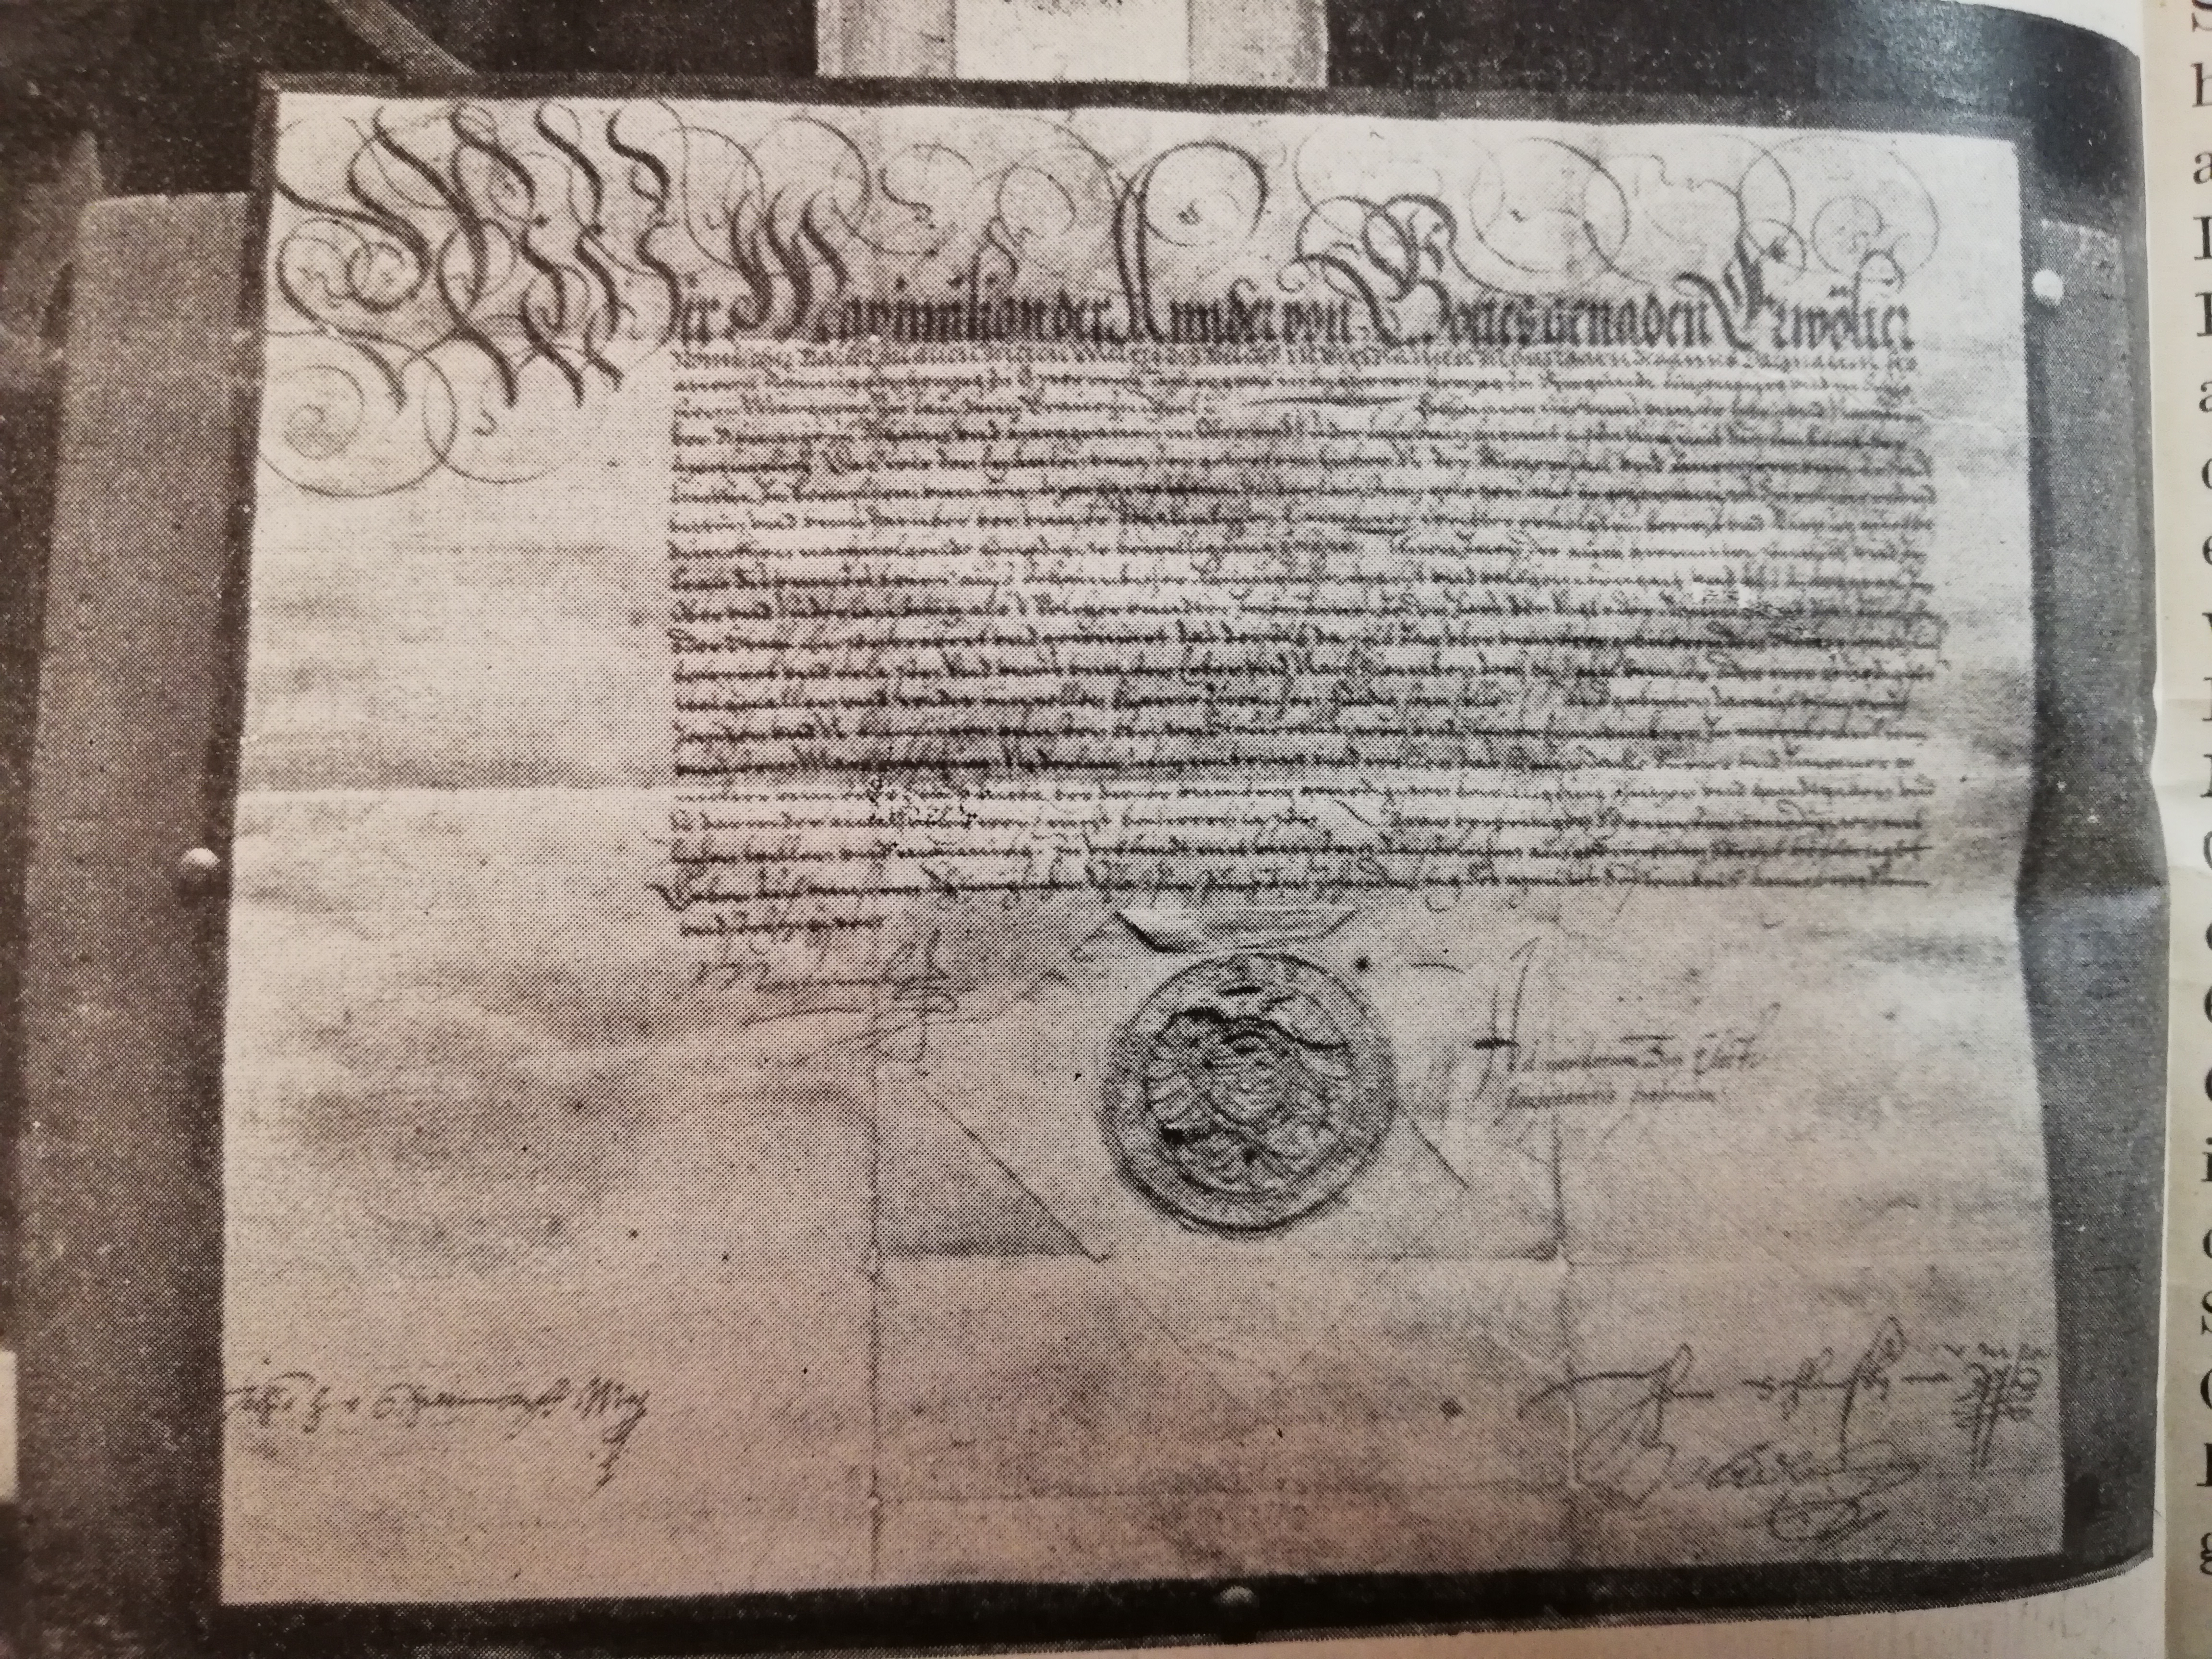 Steuerprivilegium vom 10. September 1569